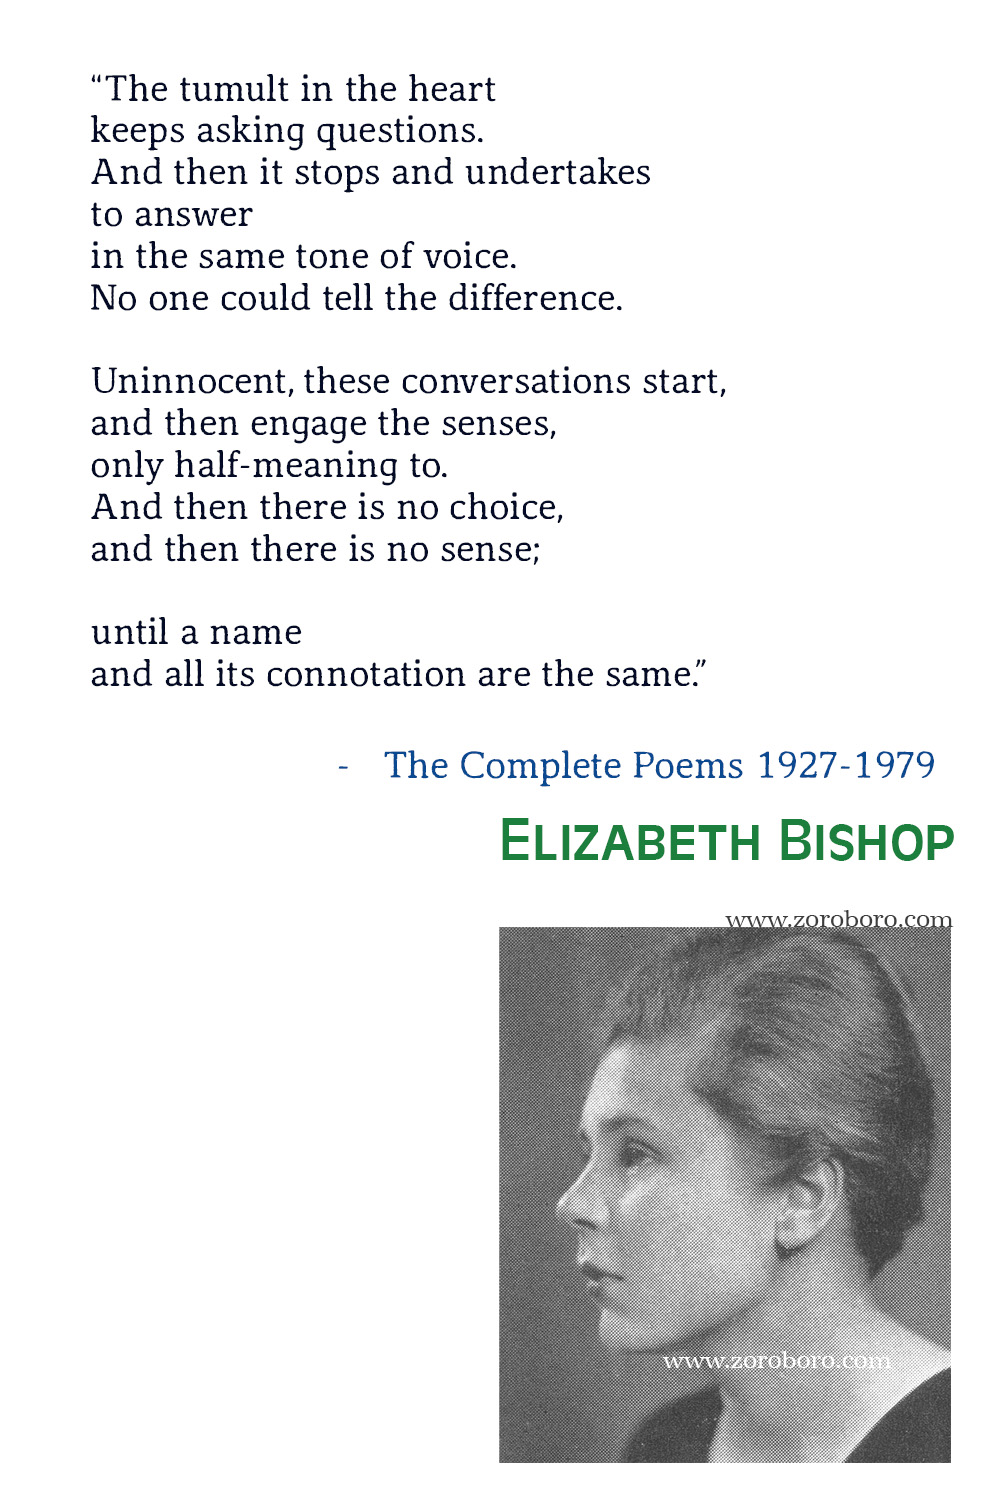 Elizabeth Bishop Quotes, Elizabeth Bishop Poet, Elizabeth Bishop Poetry, Elizabeth Bishop Poems, Elizabeth Bishop Books Quotes, The Complete Poems 1927-1979